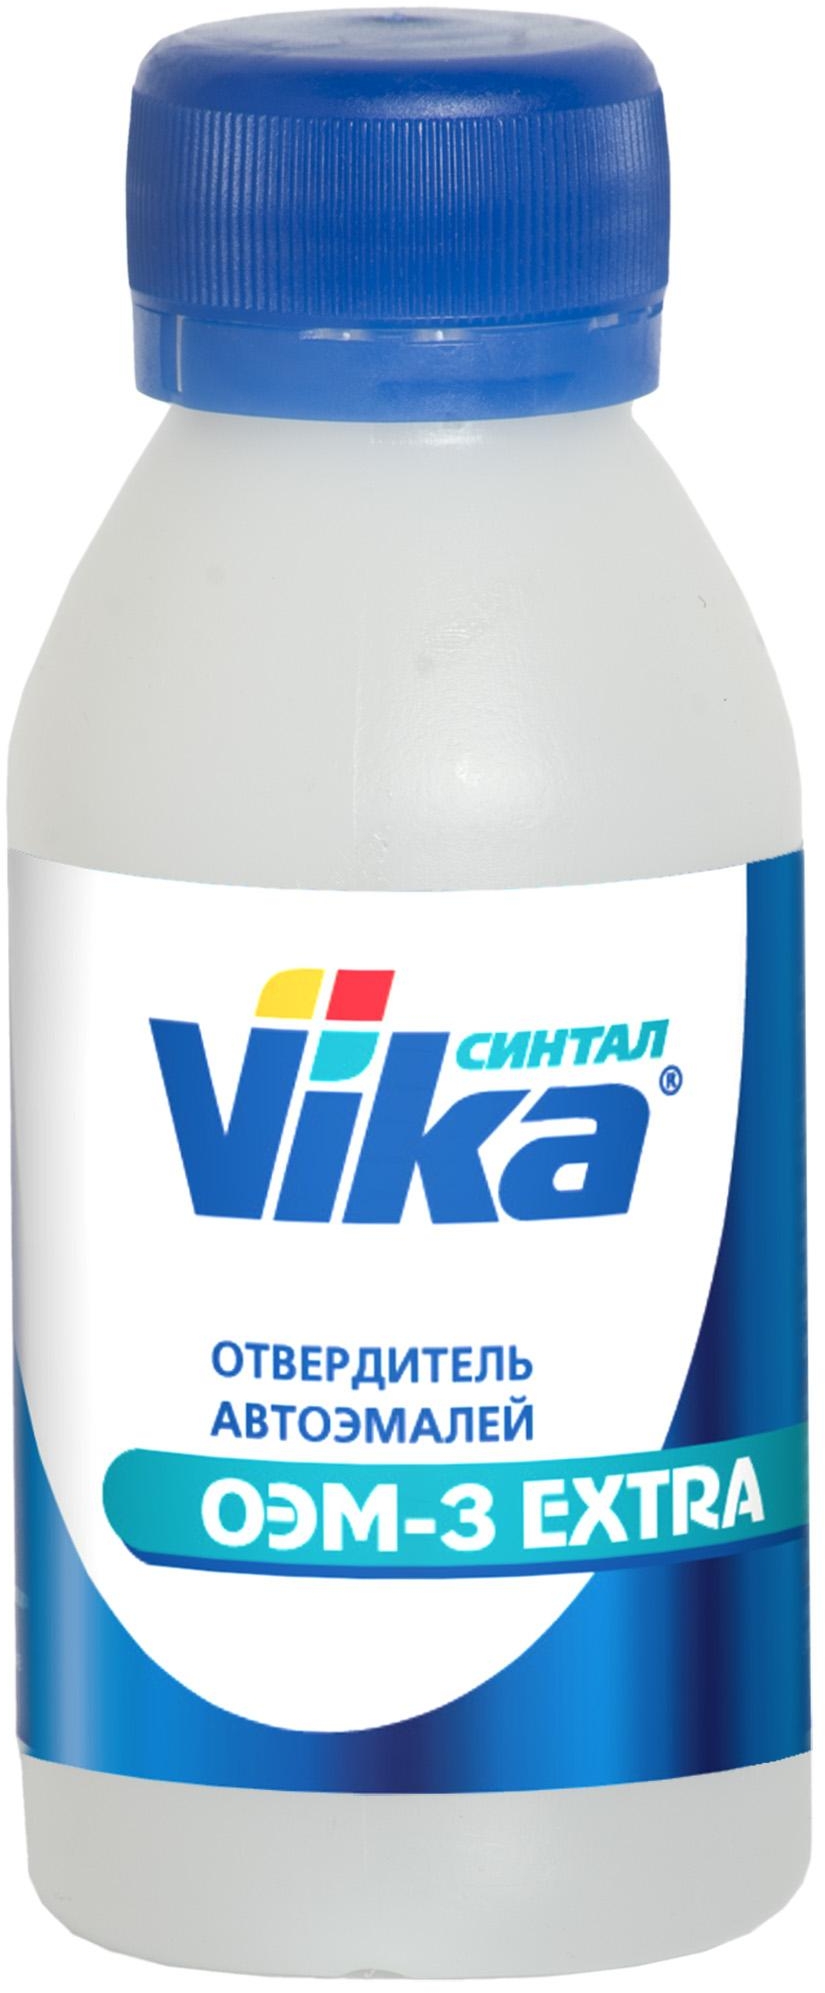 Отвердитель Vika ОЭМ-3 ЭКСТРА 0,2кг пластик 